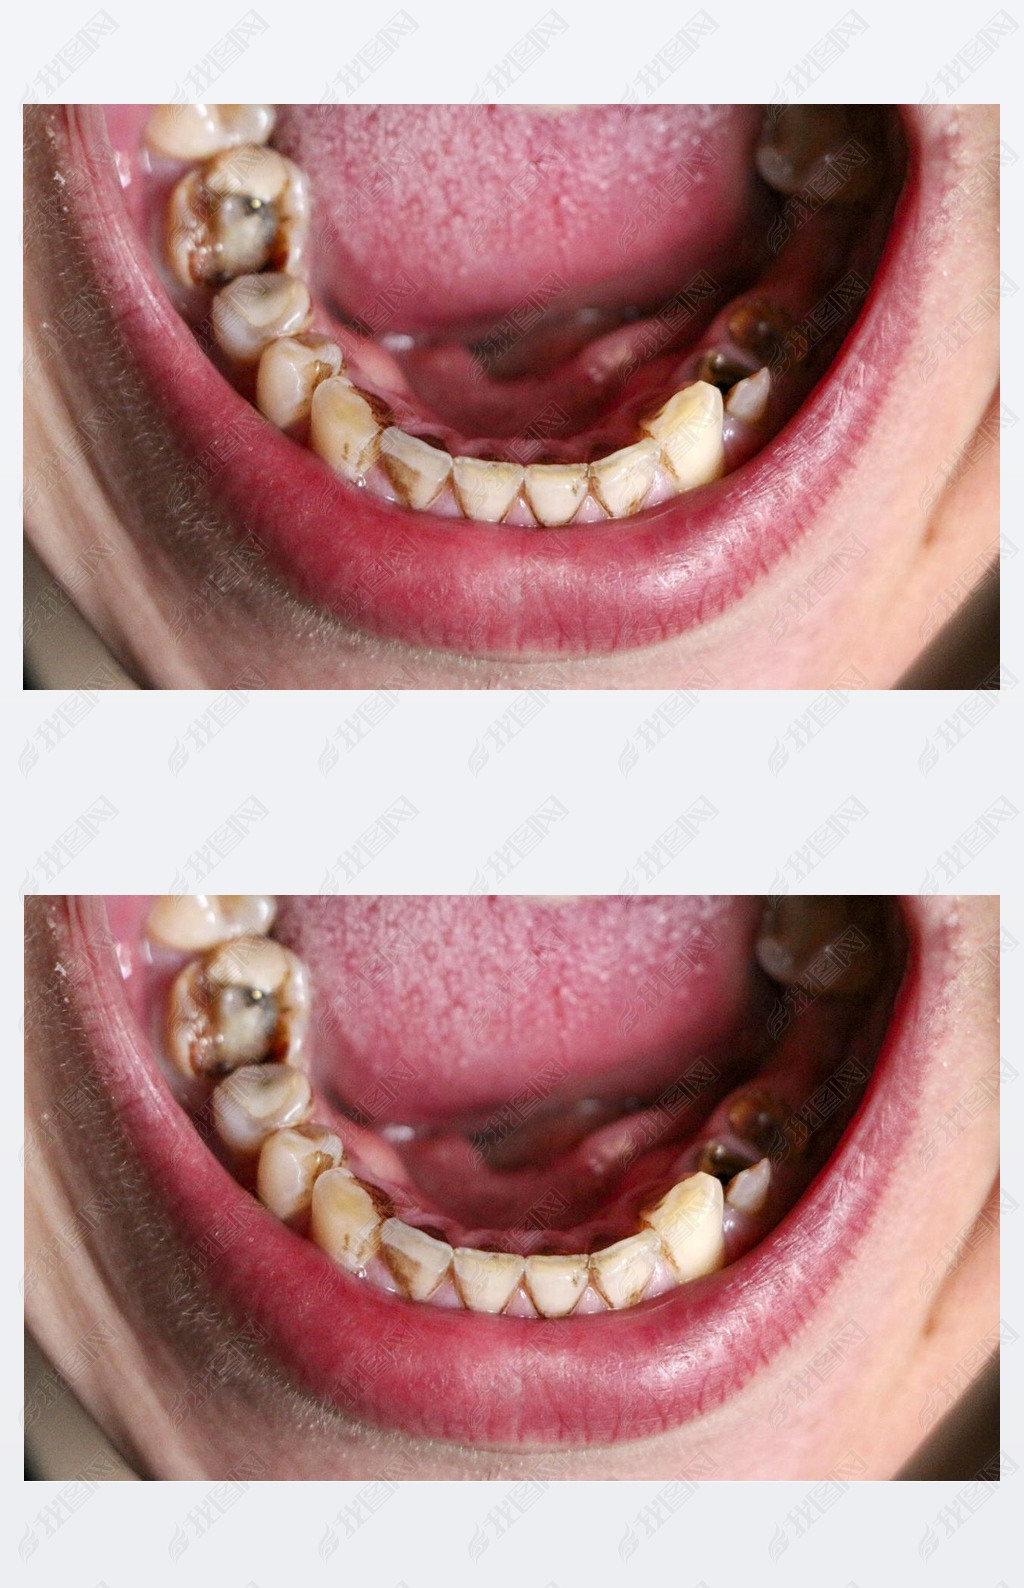 牙龈和牙周炎导致张嘴牙齿破碎疾病牙龈中的钢销用于安装牙冠吸烟者的